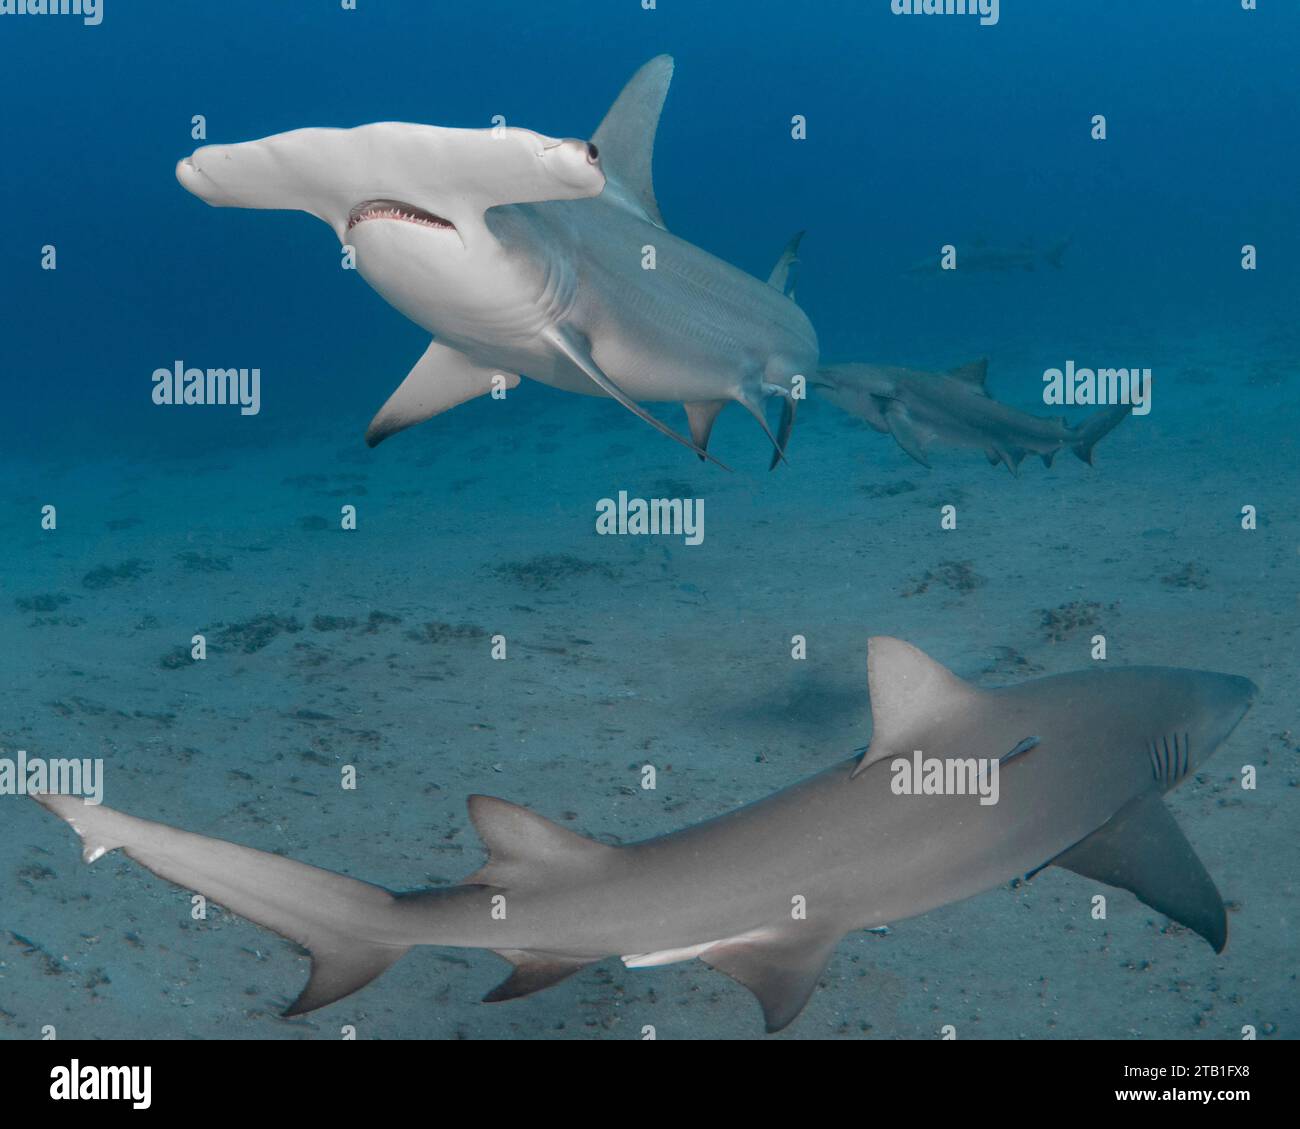 Imágenes EMOCIONANTES muestran tiburones martillo alimentados a mano por un buceador experto en la costa este de Florida. Profesional sha Foto de stock